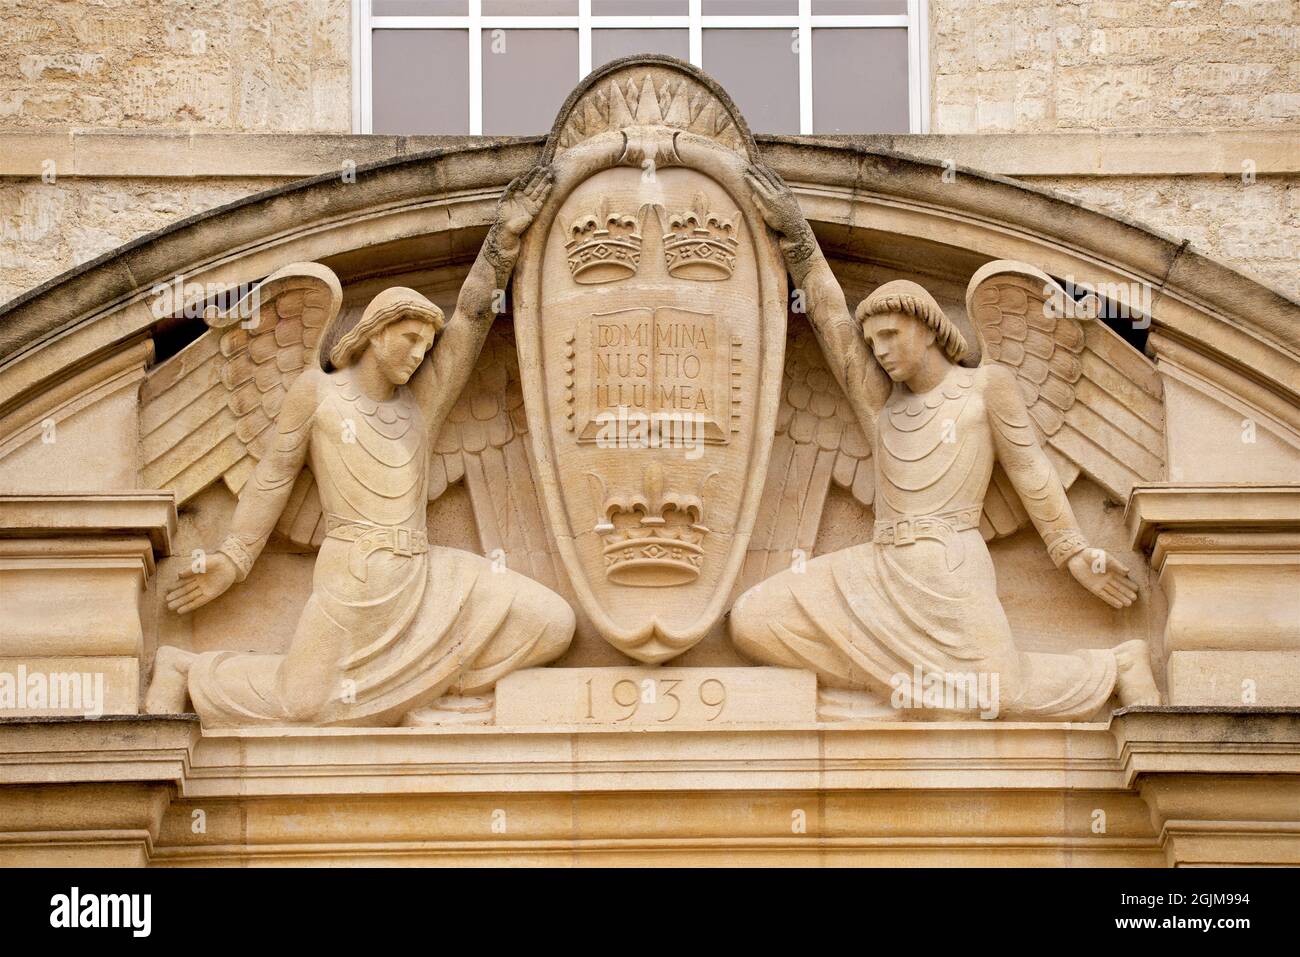 Décoration sculptée en pierre à l'extérieur du bâtiment de l'université, The Weston Library, University of Oxford, Oxford, Angleterre, Royaume-Uni. EN DATE DU 1939 OMINUS ILLUMINATIO MEA. Devise de l'université, le Seigneur est ma lumière Banque D'Images